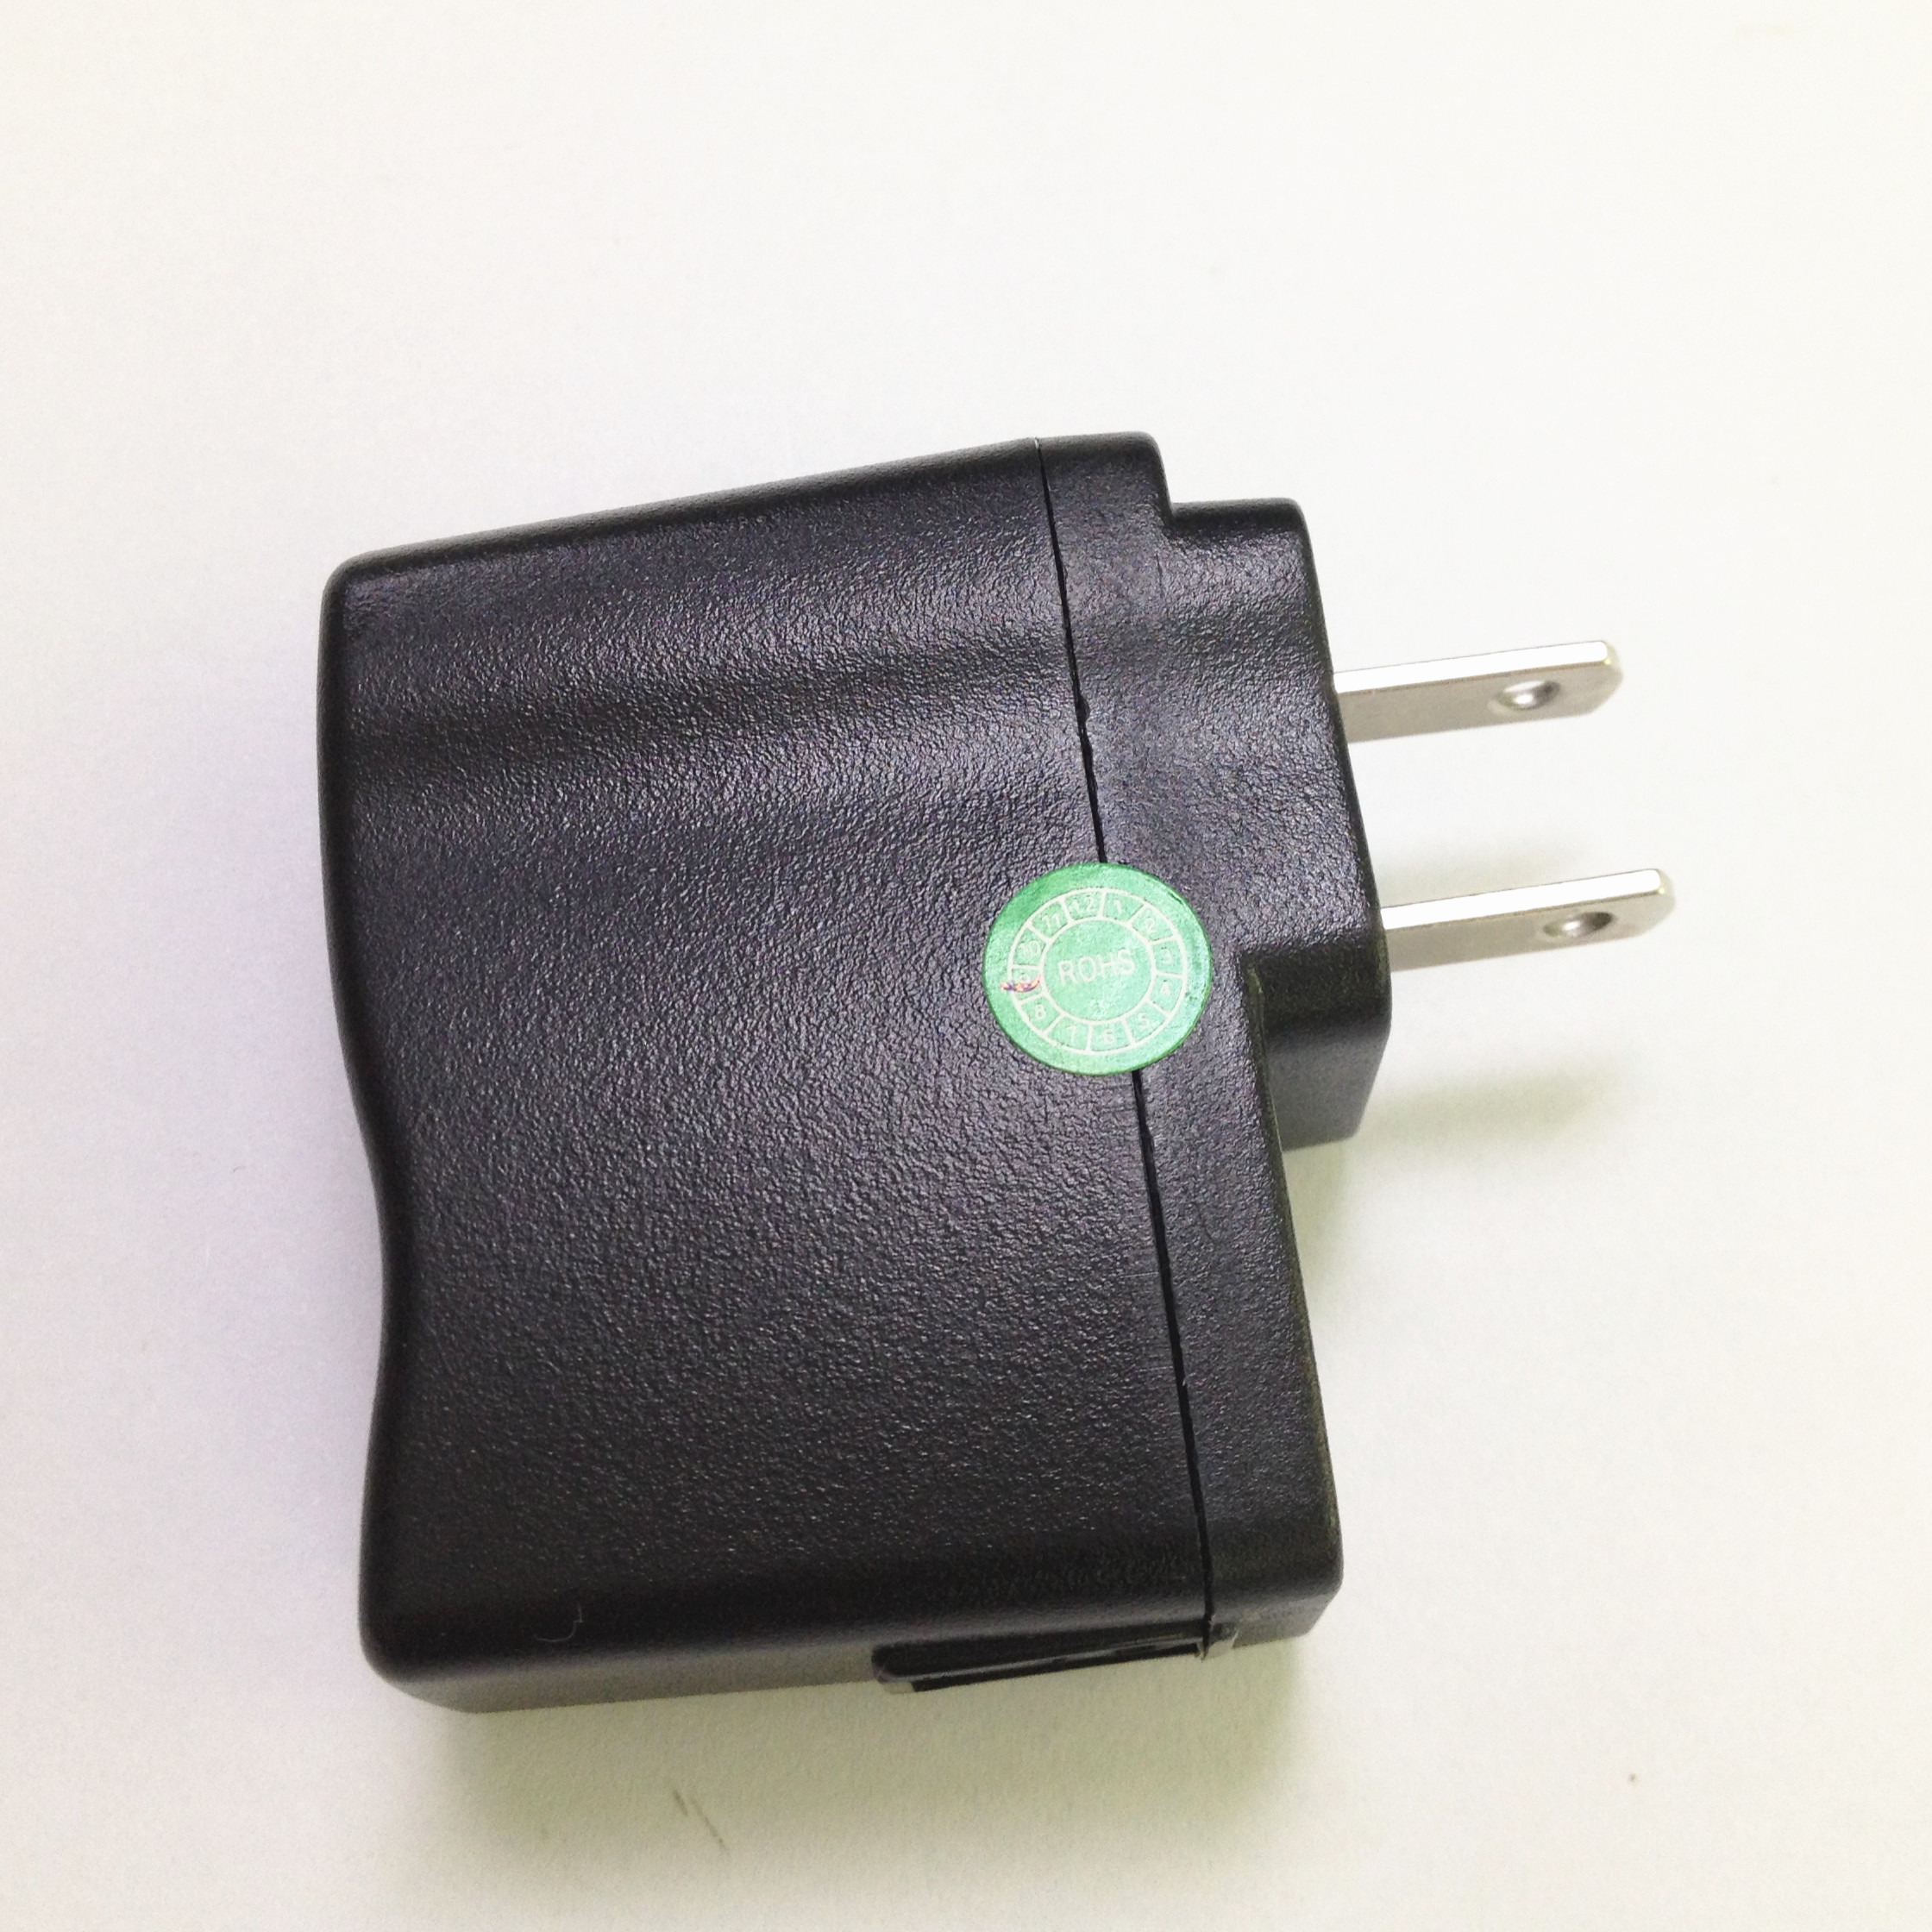 Adaptador do poder da C.C. 1A da montagem 5W 5V da parede de USB para o carregador claro do MP3/diodo emissor de luz